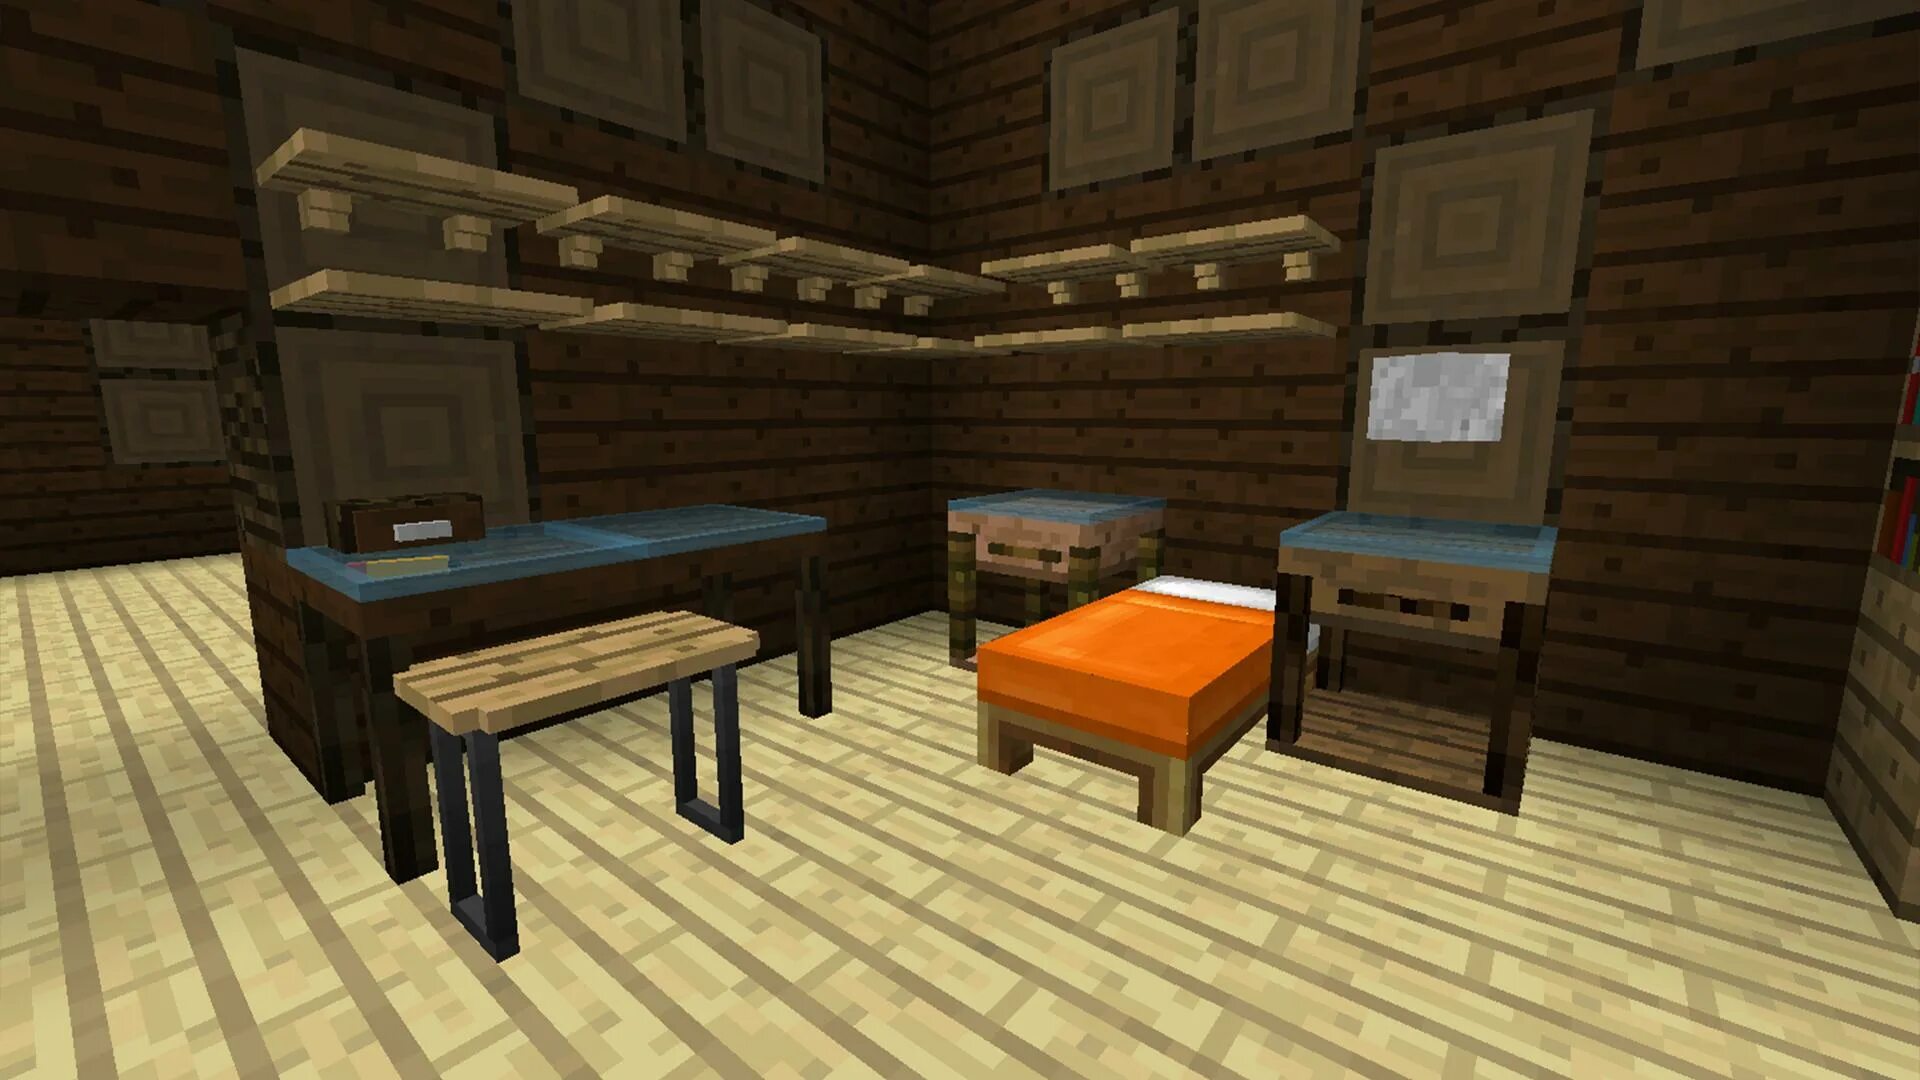 Русская мебель майнкрафт. Minecraft 1.12.2 Mod мебель. Интерьер в МАЙНКРАФТЕ без модов. Мод на мебель для дома. Мод на интерьер в майнкрафт.